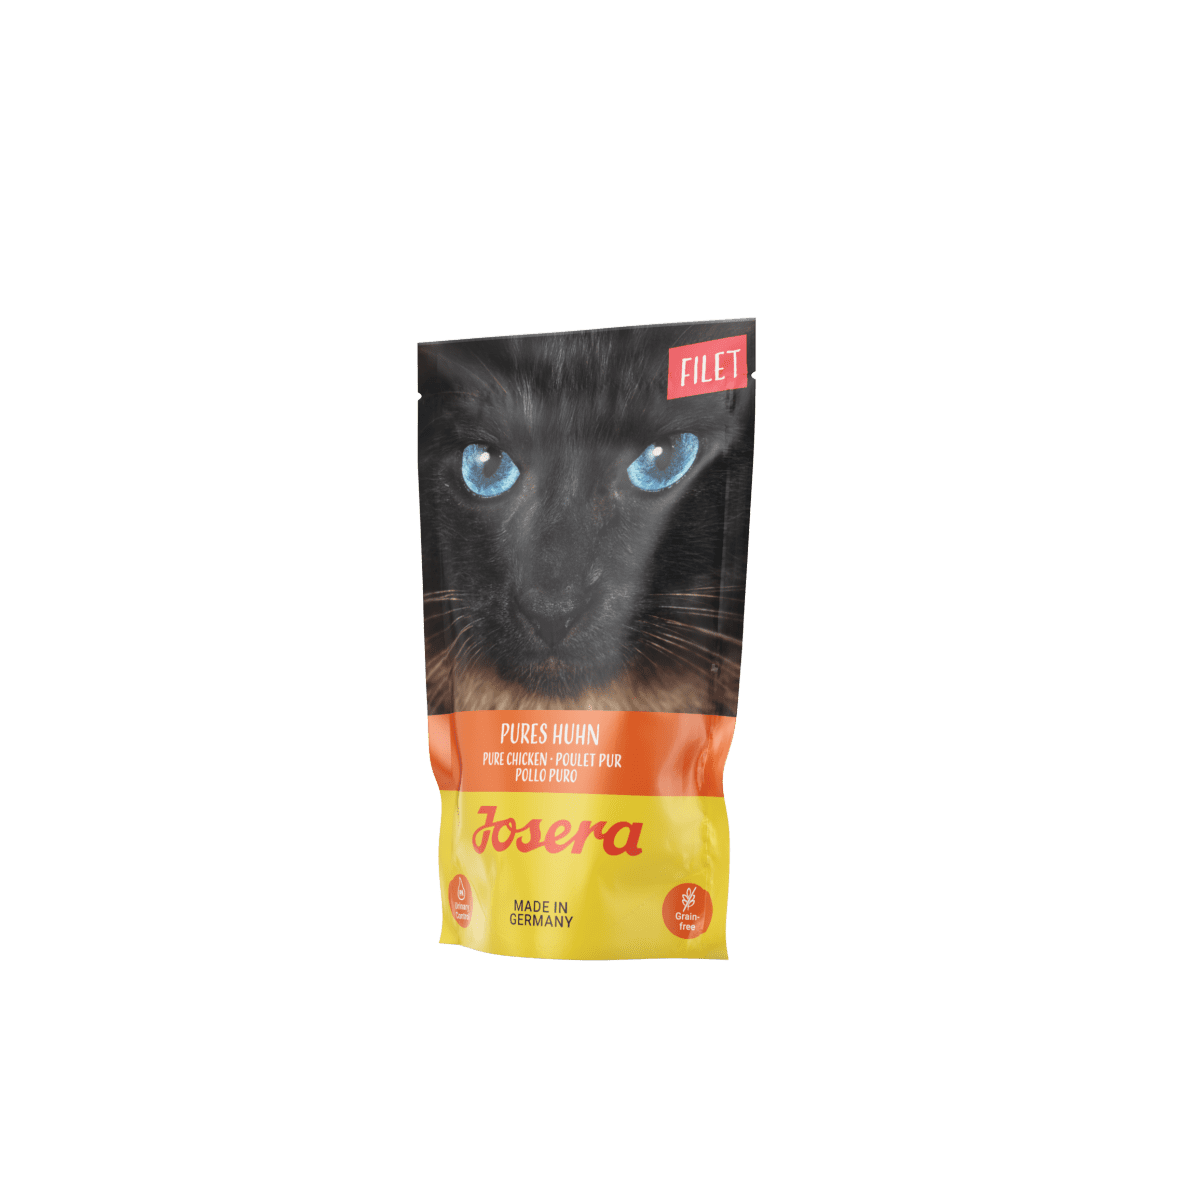 JOSERA Filet Pures Huhn - вологий корм шматочки у підливці зі смаком курки для дорослих котів